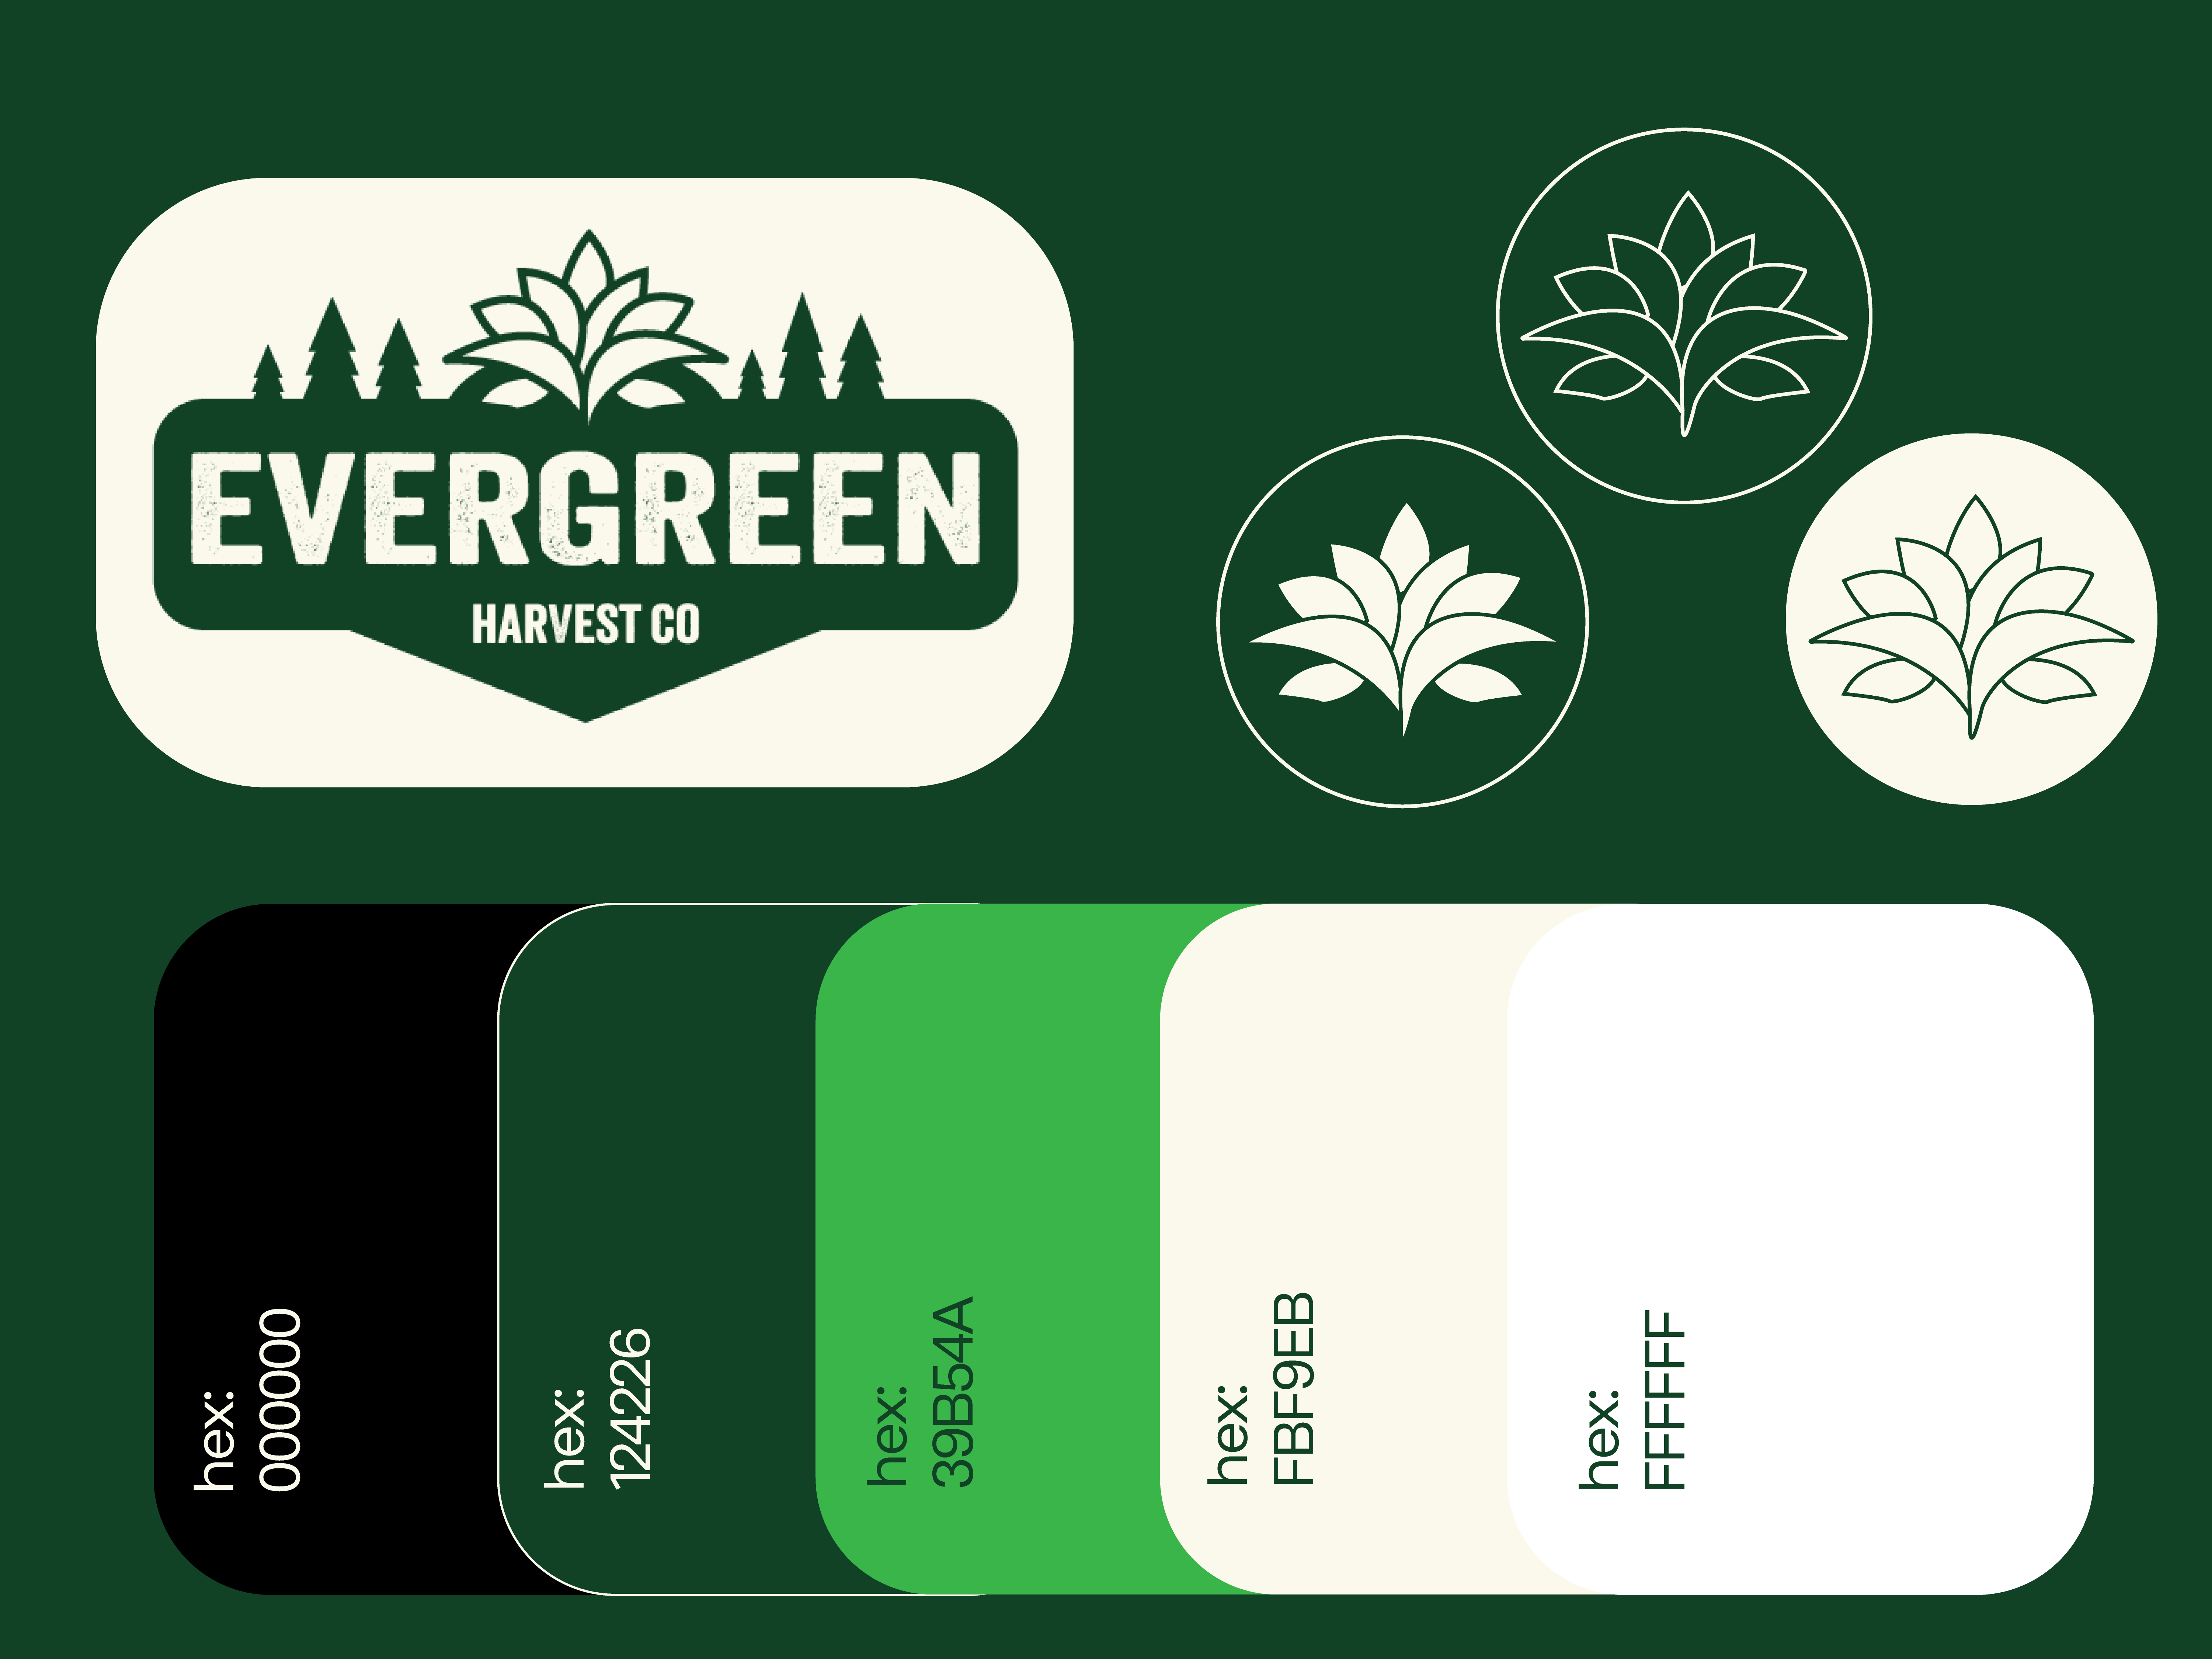 Evergreen Harvest Co Brand guide pt 2 brand branding graphic design logo social media